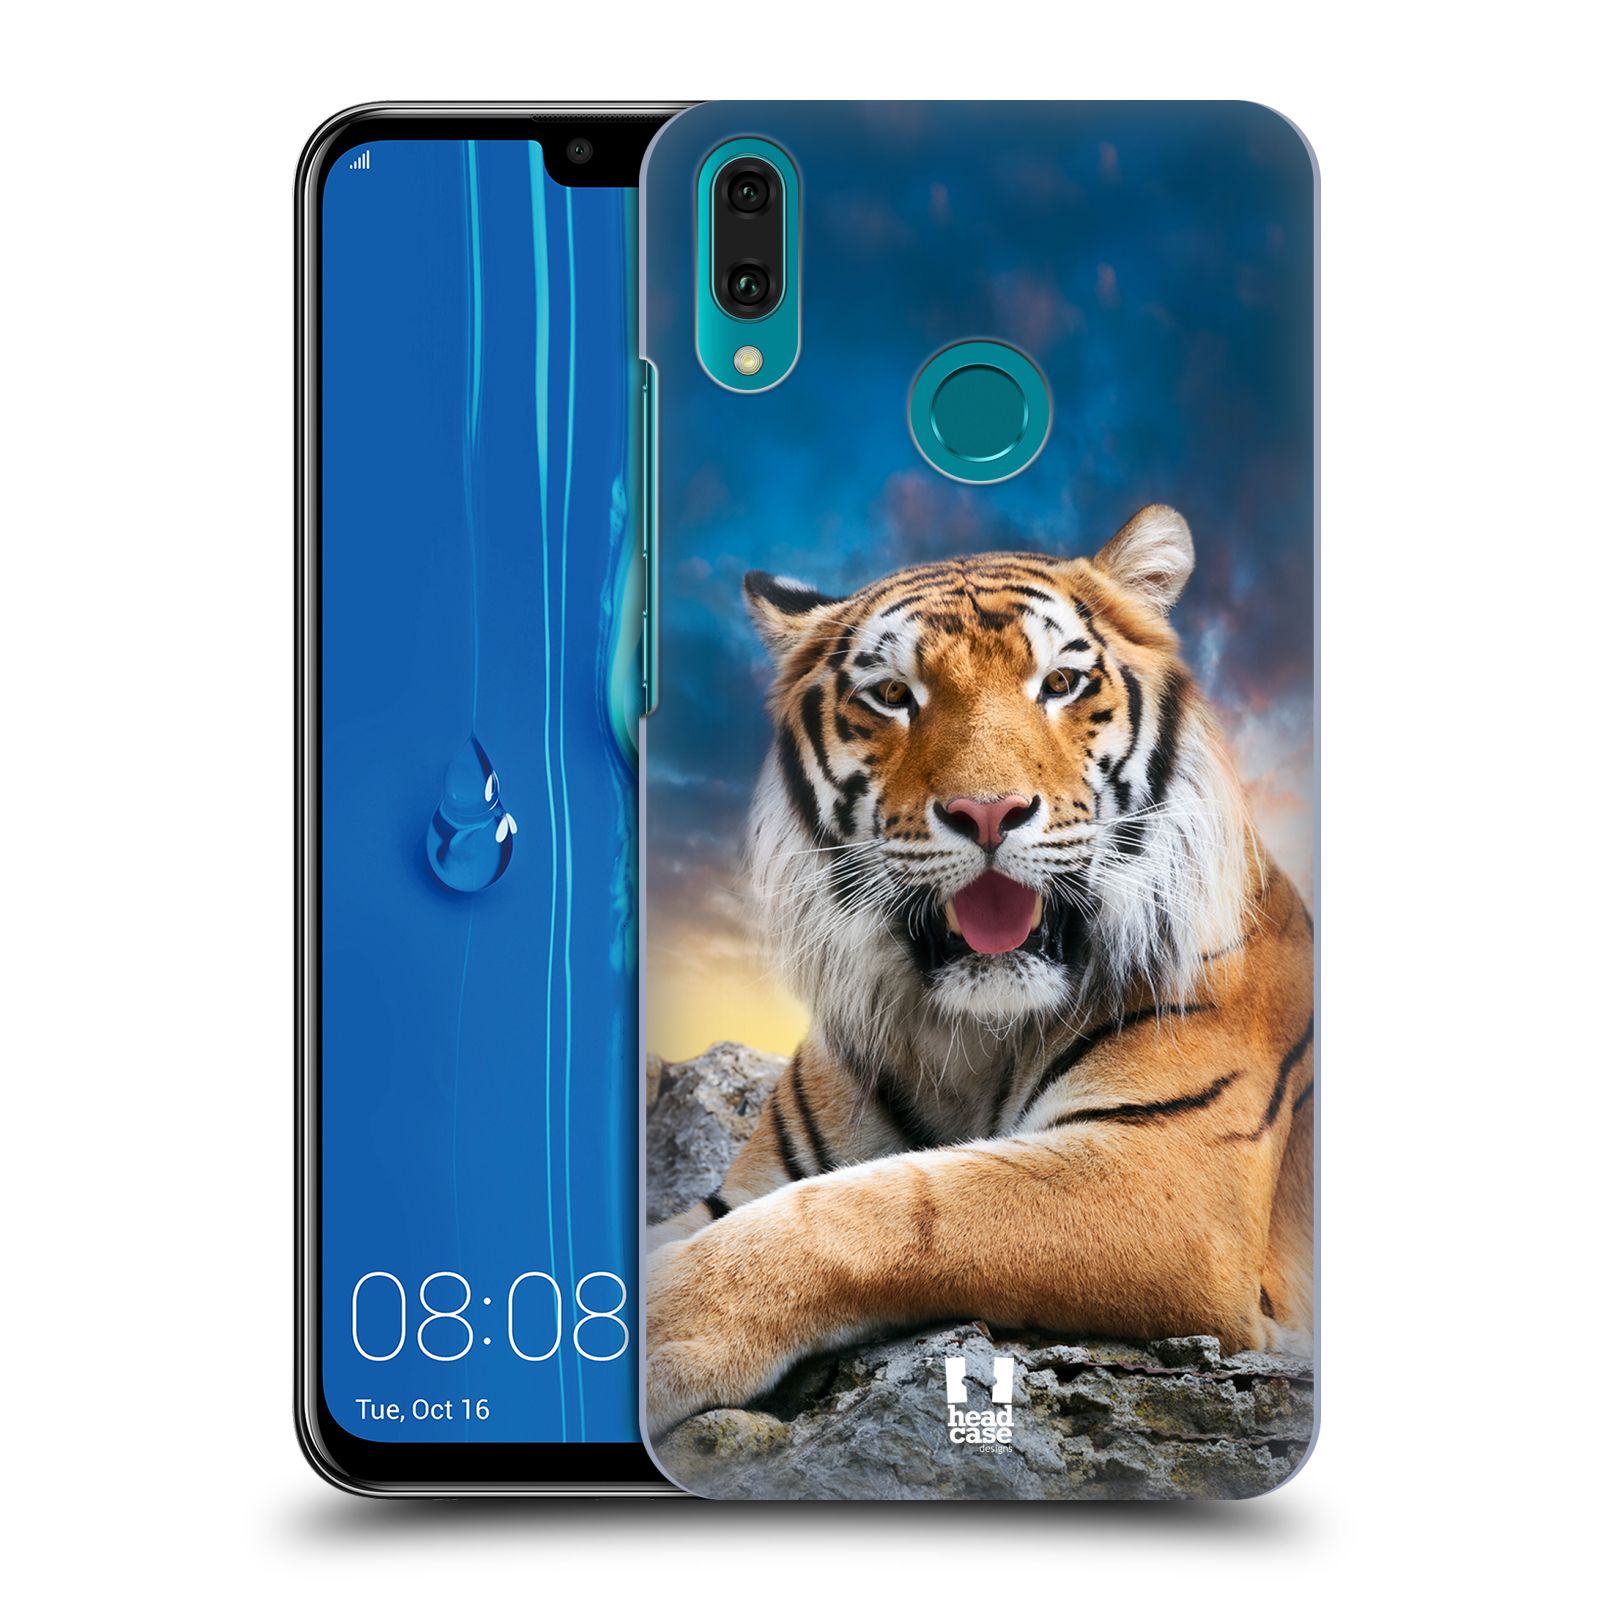  Pouzdro na mobil Huawei Y9 2019 - HEAD CASE - vzor Divočina, Divoký život a zvířata foto TYGR A NEBE